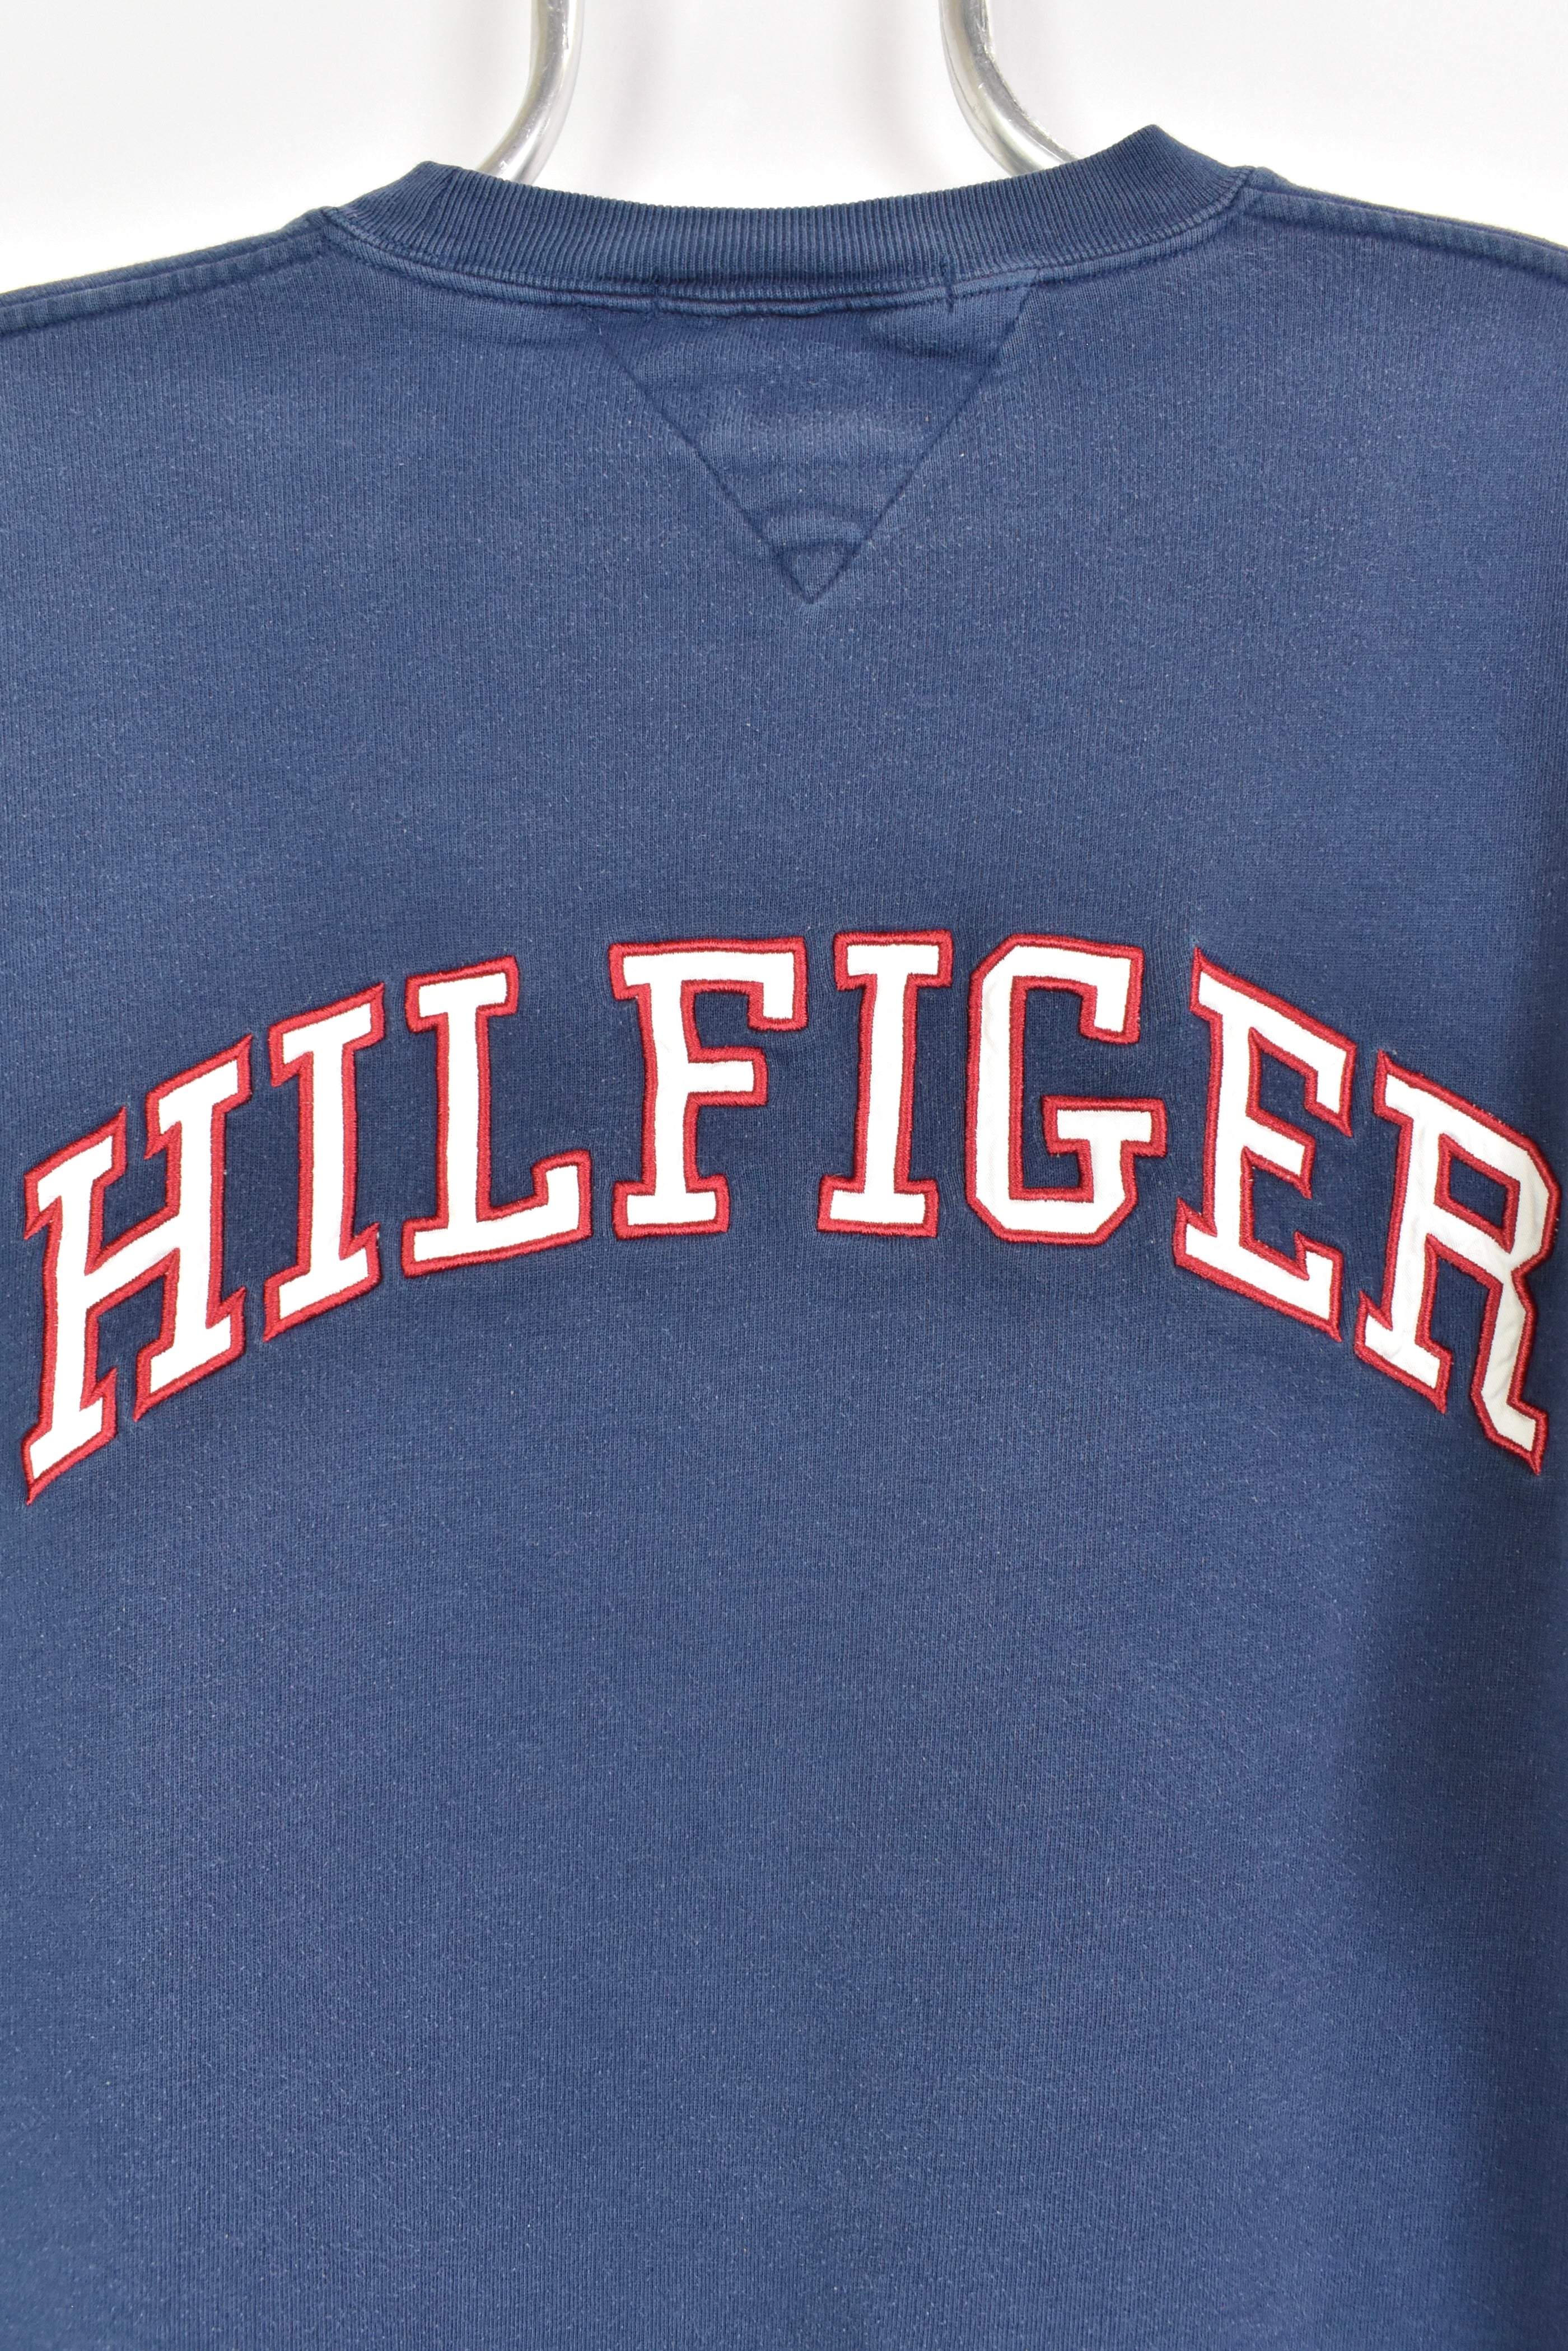 Vintage Tommy Hilfiger sweatshirt, navy blue embroidered crewneck - AU Large TOMMY HILFIGER